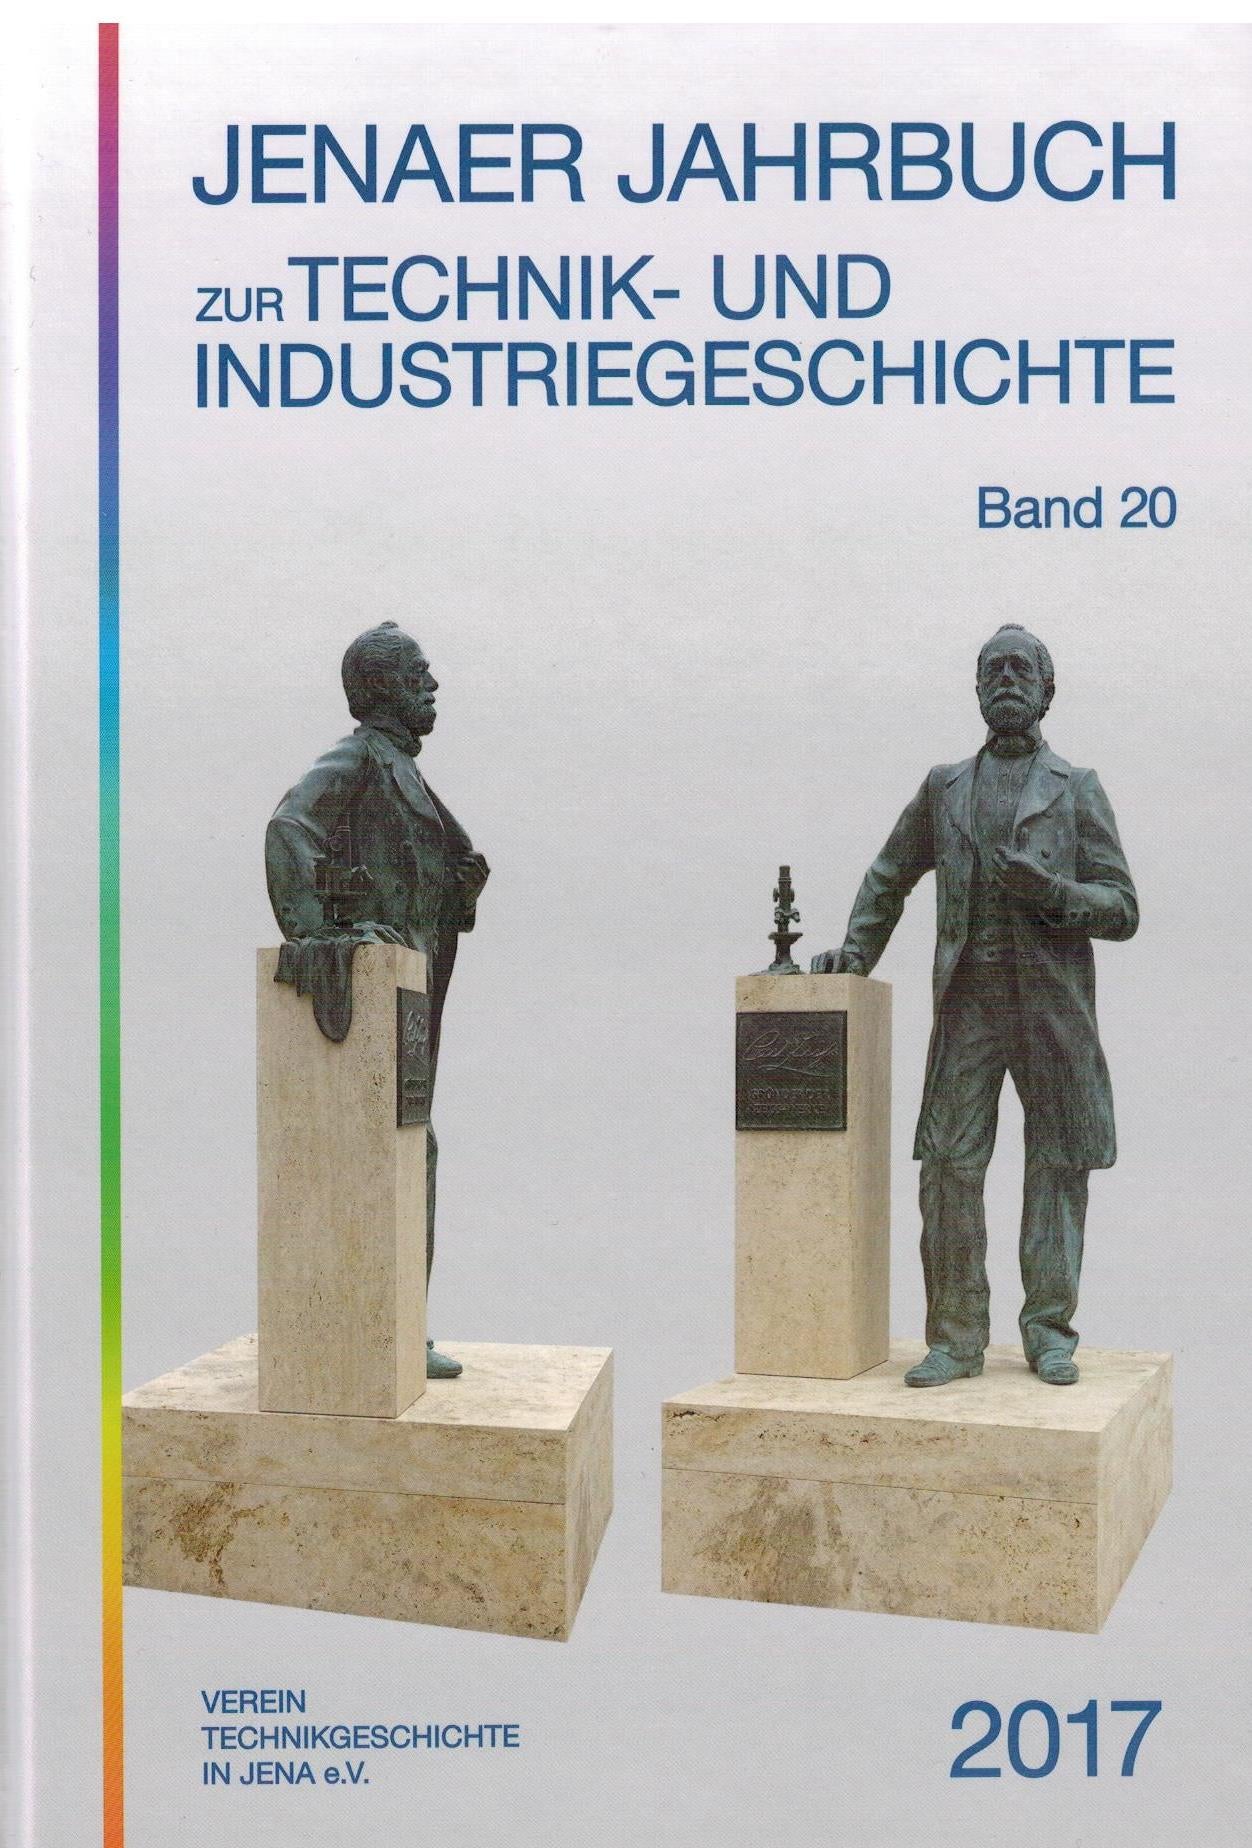 Jenaer Jahrbuch zur Technik- und Industriegeschichte - Band 20